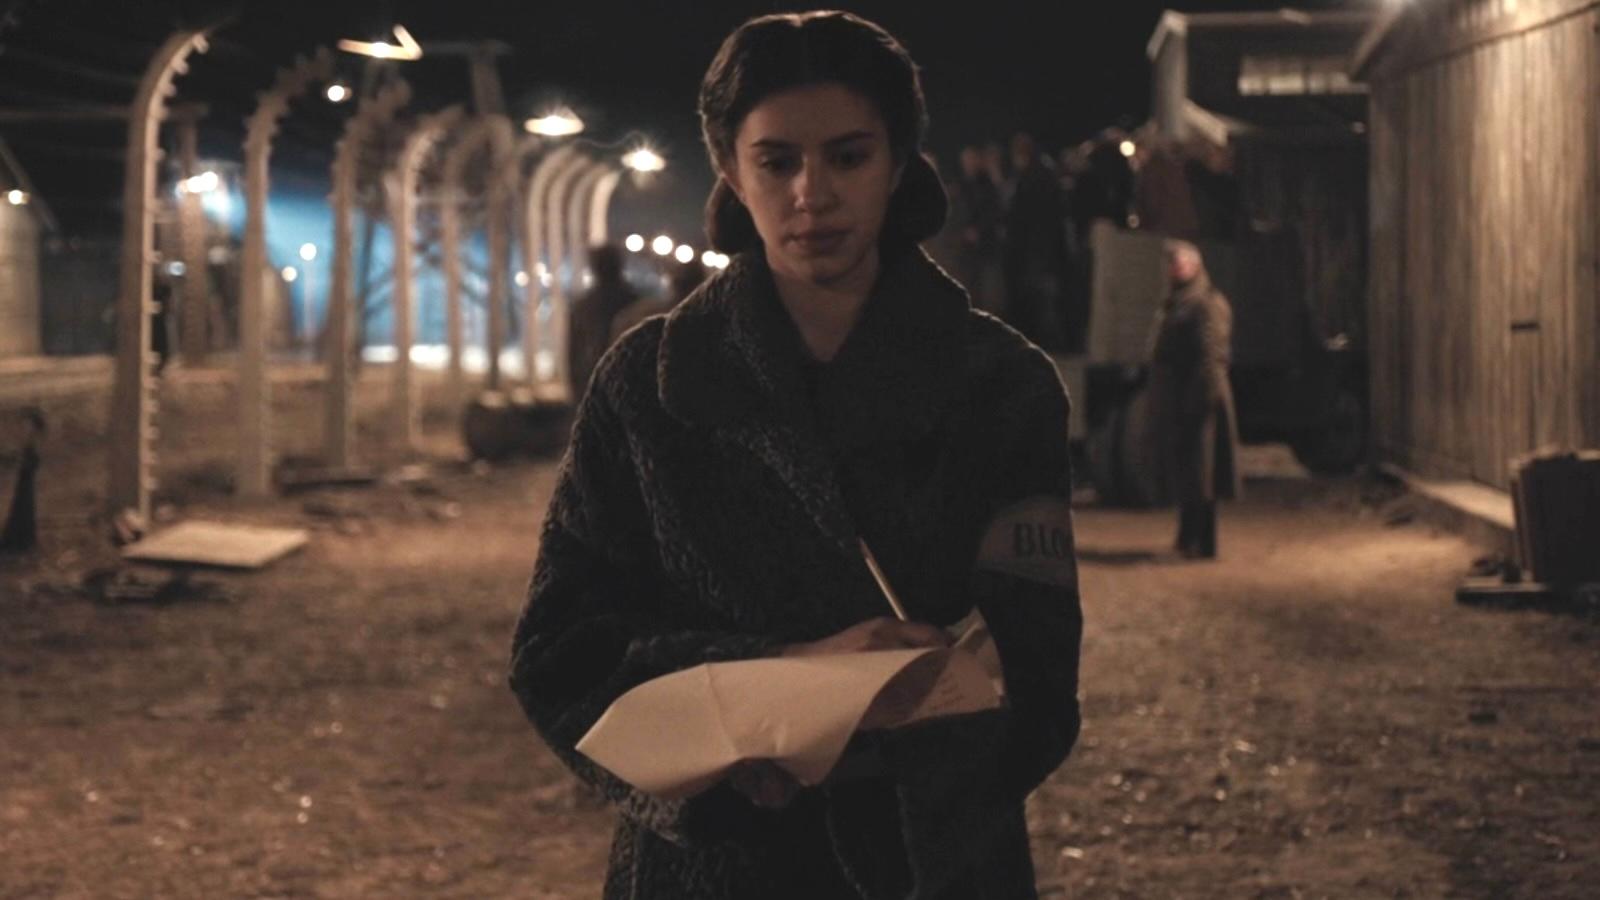 Yali Topol Margalith as Cilka in The Tattooist of Auschwitz